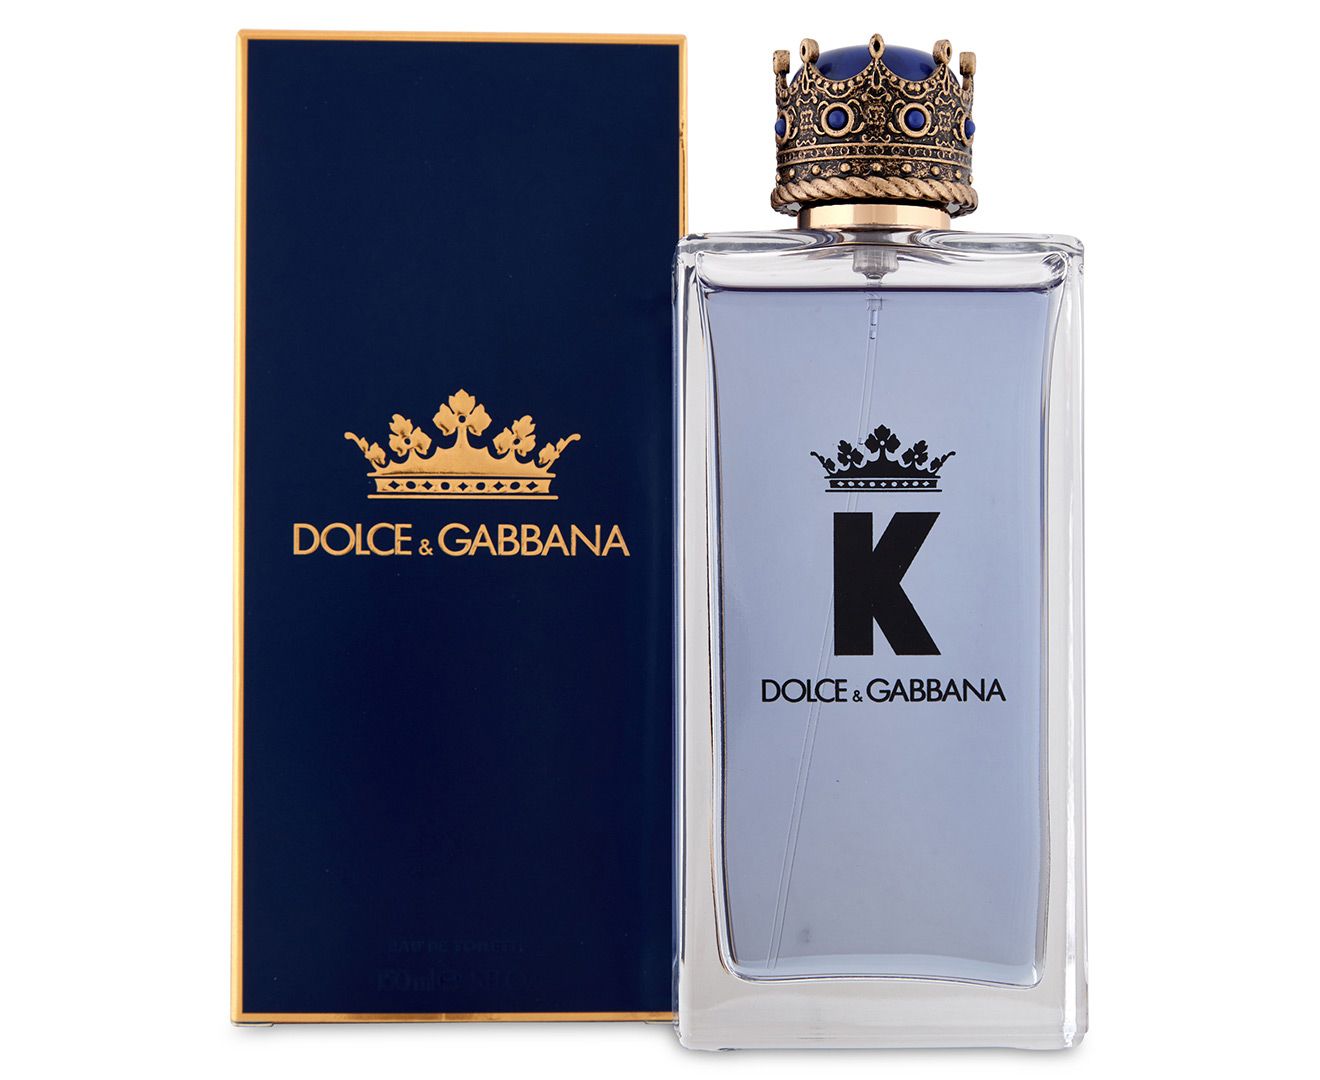 Dolce & Gabbana K Eau De Toilette for Men 150ml at Ratans Online Shop - Perfumes Wholesale and Retailer Fragrance